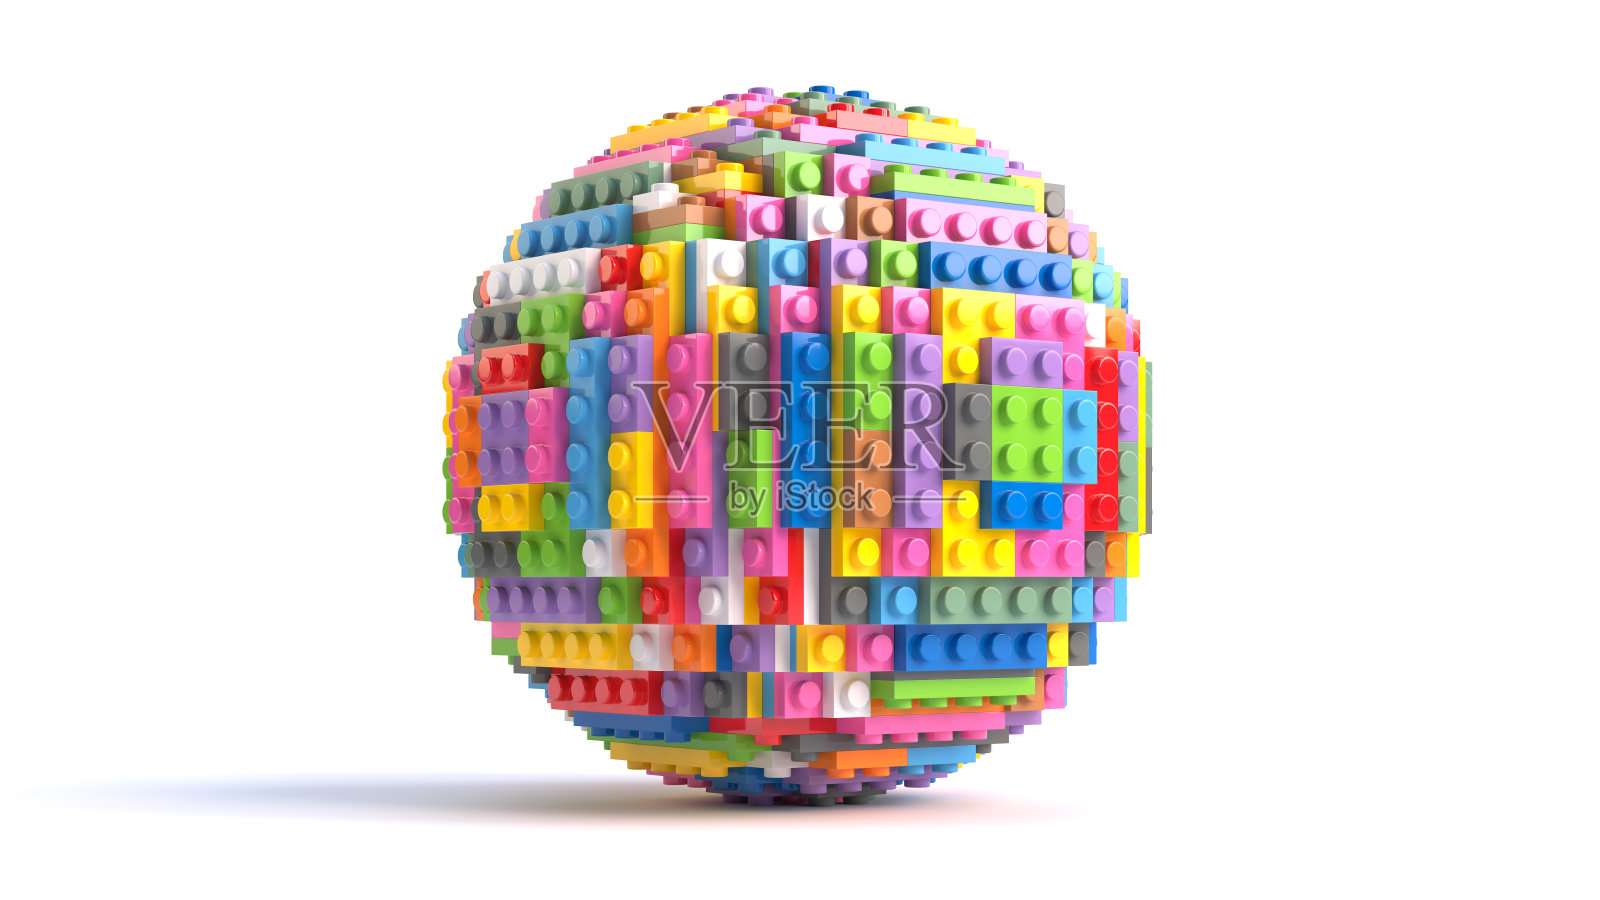 用彩色玩具积木做成的球体。三维渲染插画图片素材